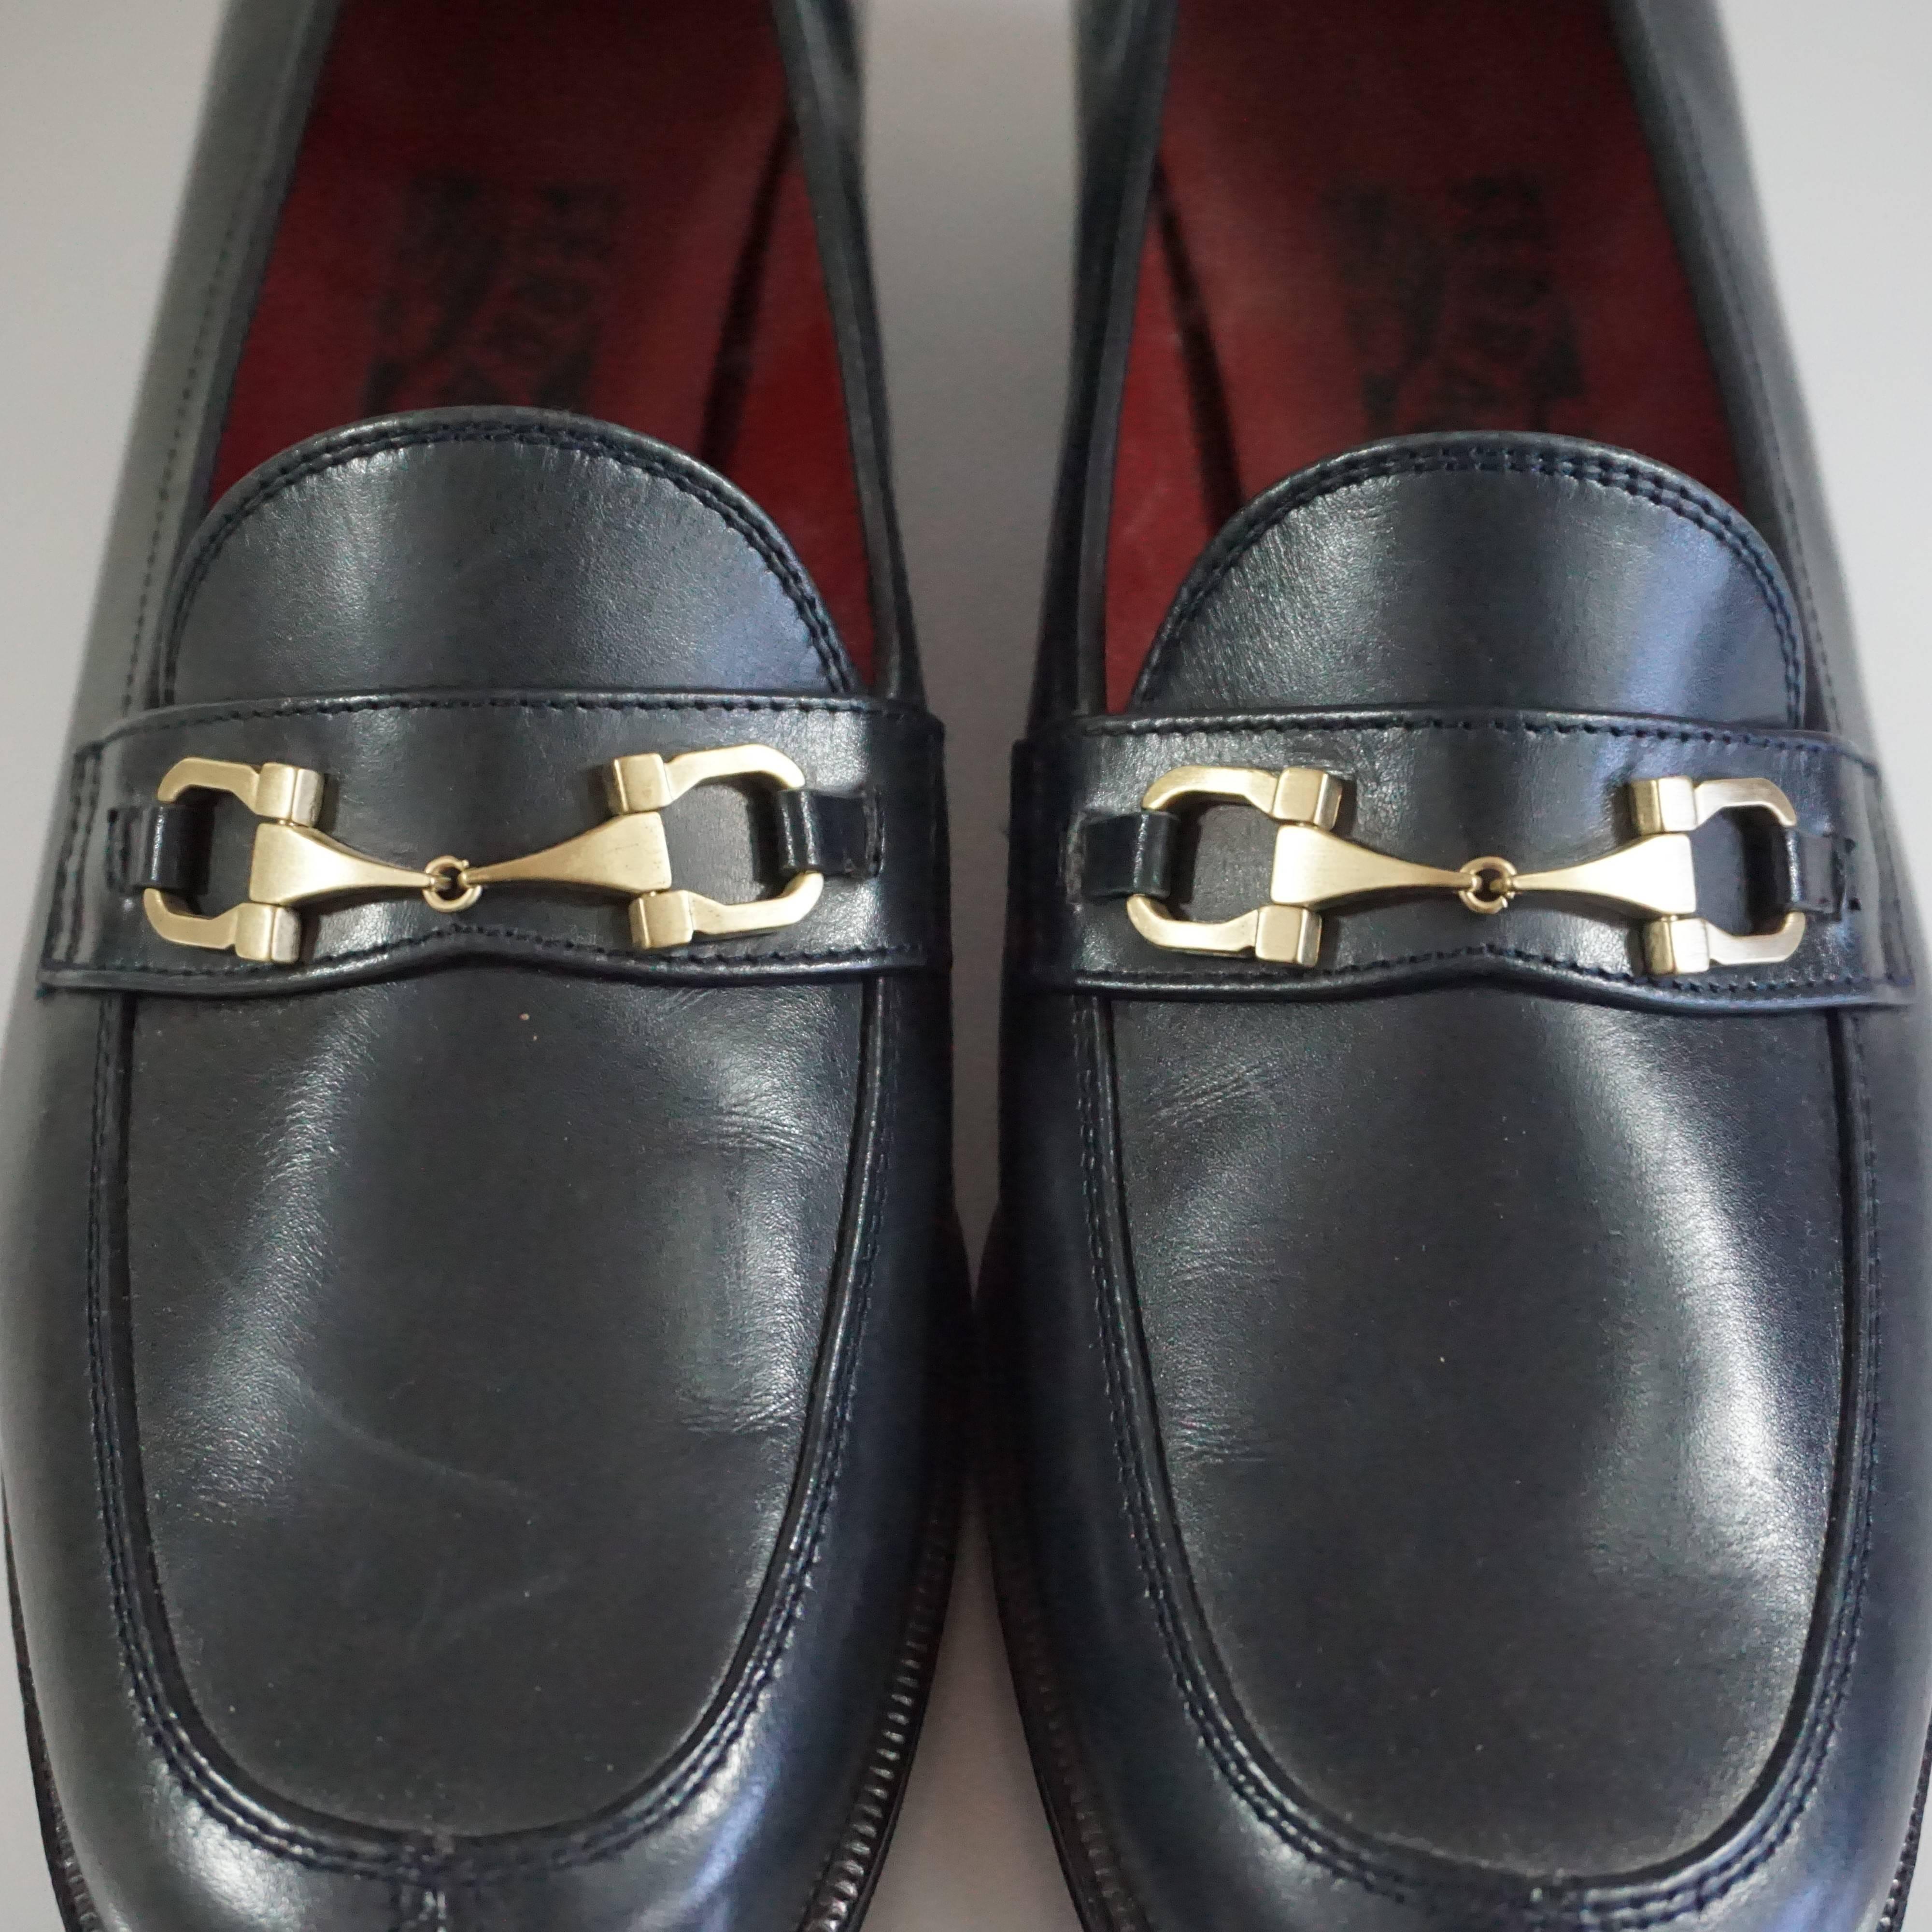 Salvatore Ferragamo Black Leather Loafers - 6.5 B 2